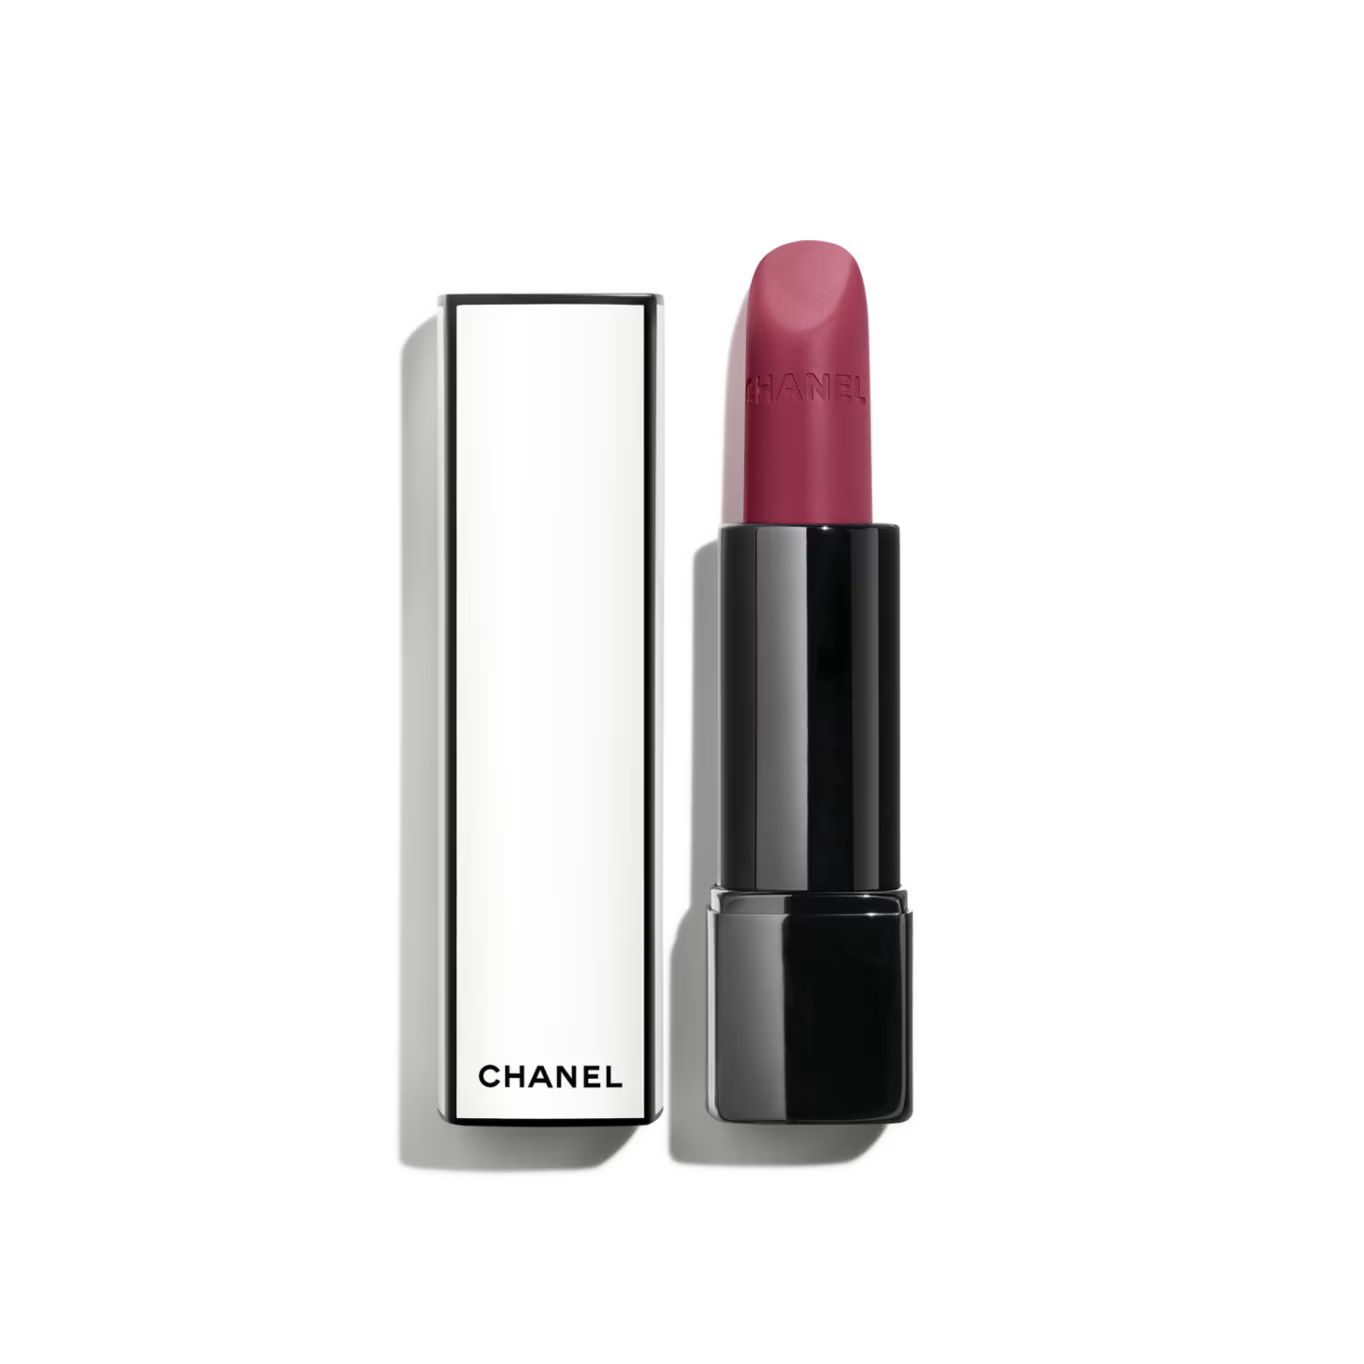 ROUGE ALLURE VELVET NUIT BLANCHE Luminous matte lip colour 05:00 | CHANEL | Chanel, Inc. (US)